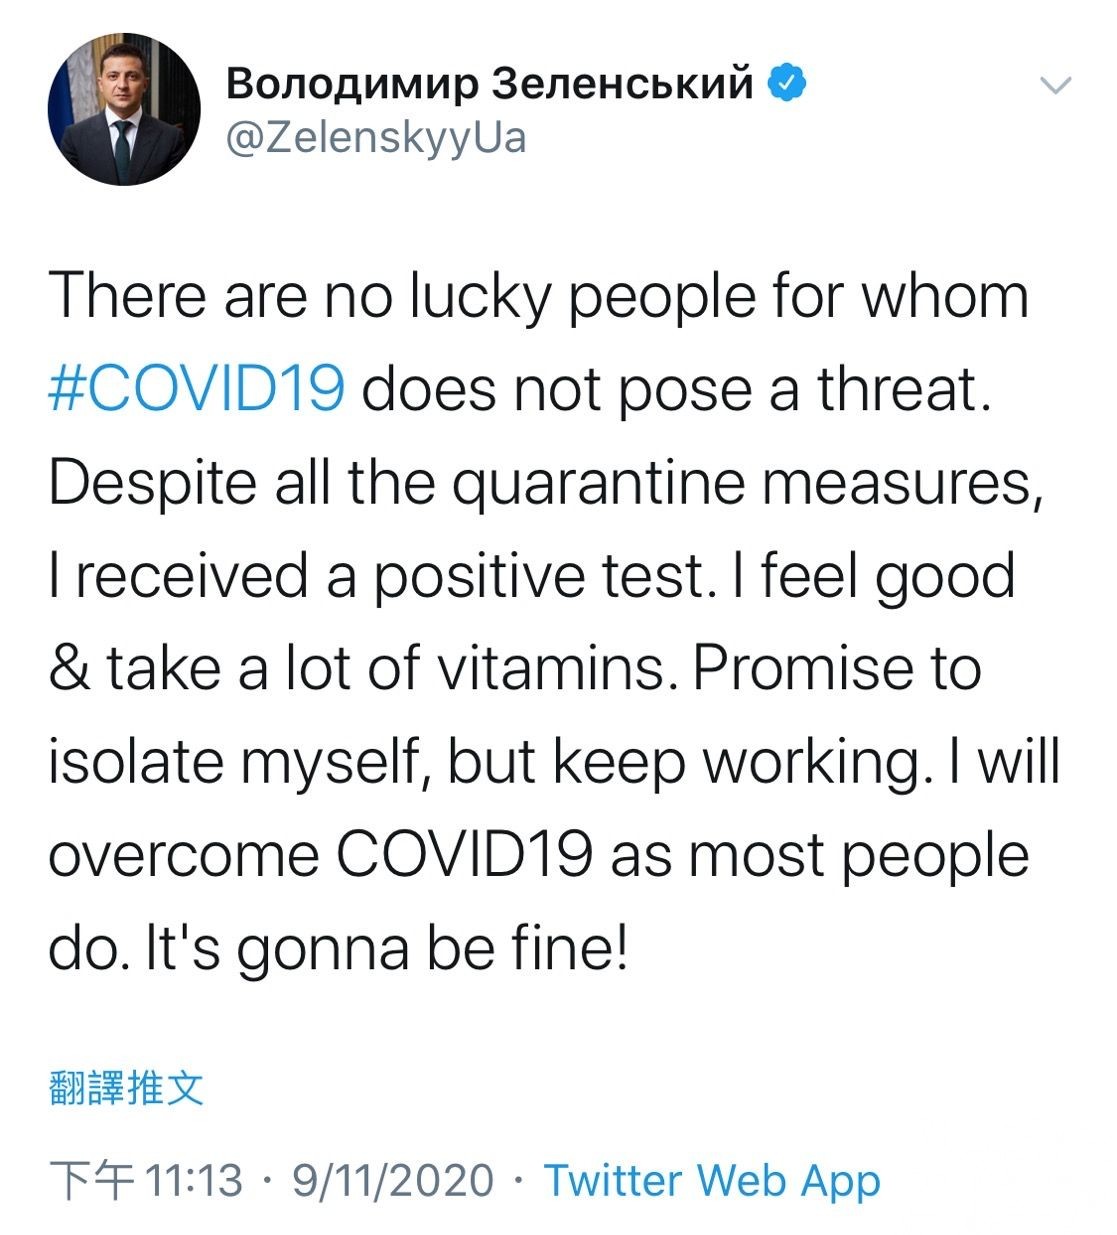 烏克蘭總統確診感染新冠肺炎